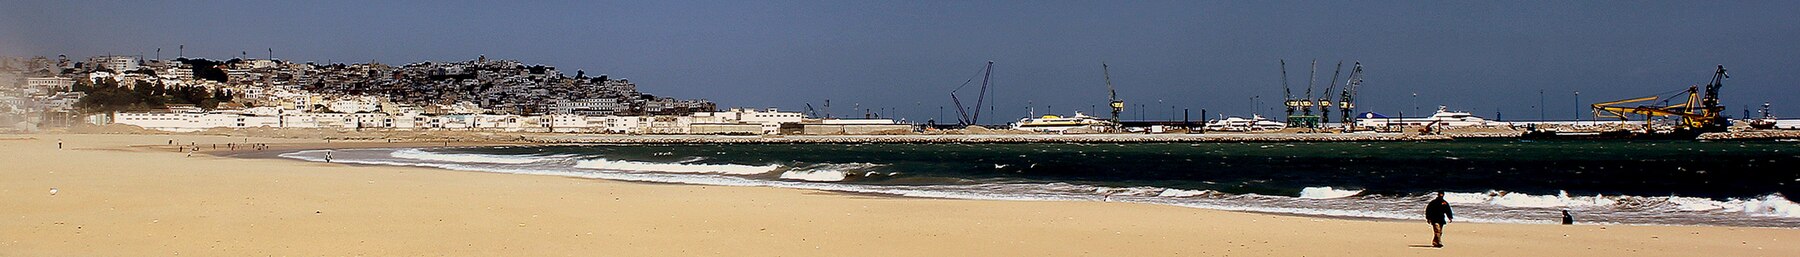 Pasica Tangier Beachfront.jpg